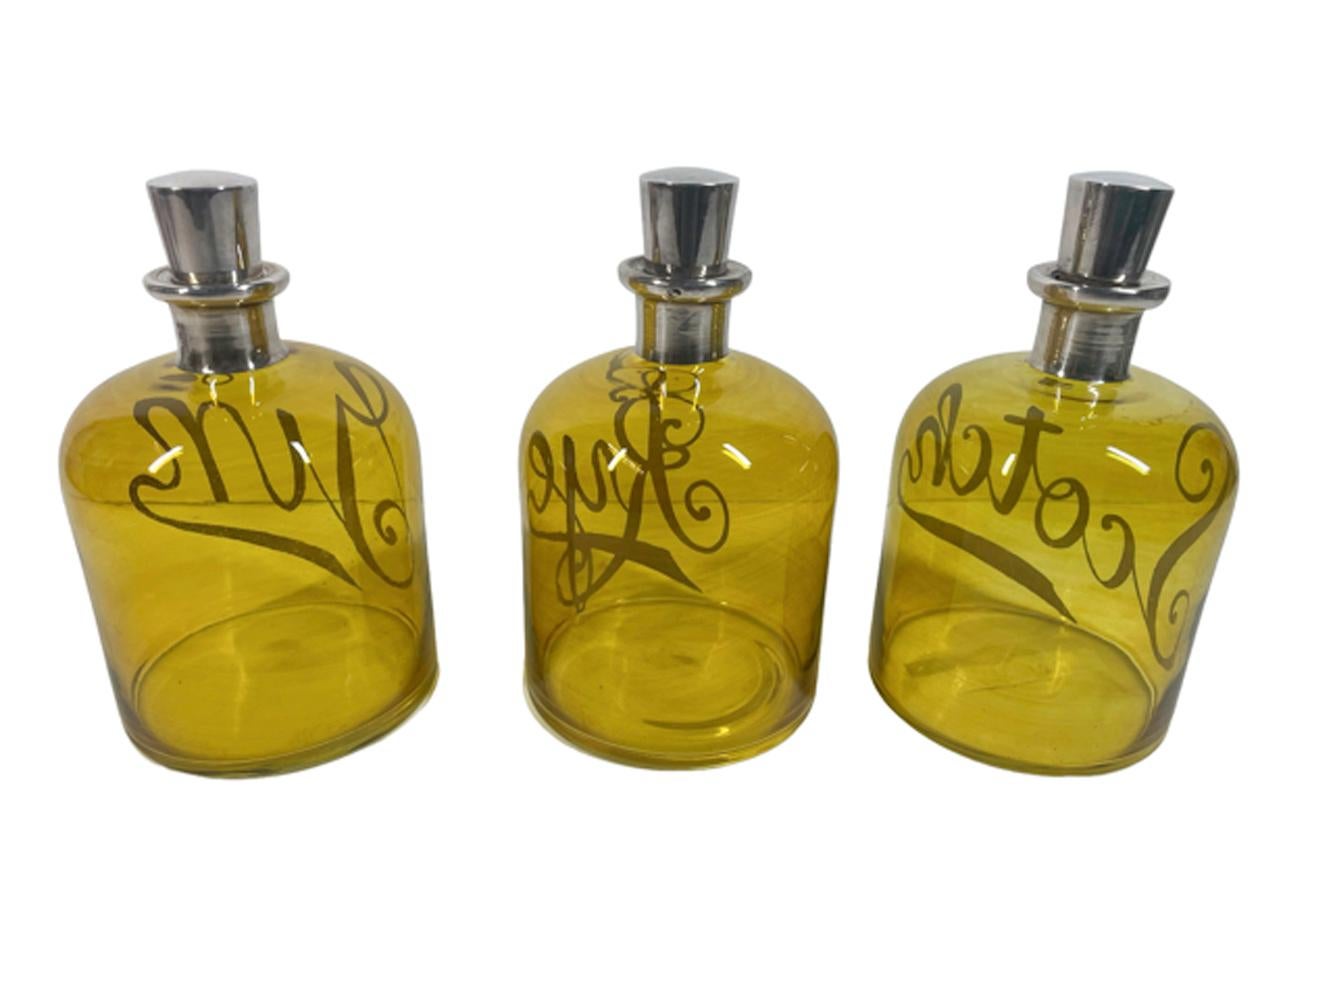 Ensemble inhabituel de trois carafes ou bouteilles de bar en verre jaune/ambre avec des étiquettes argentées 